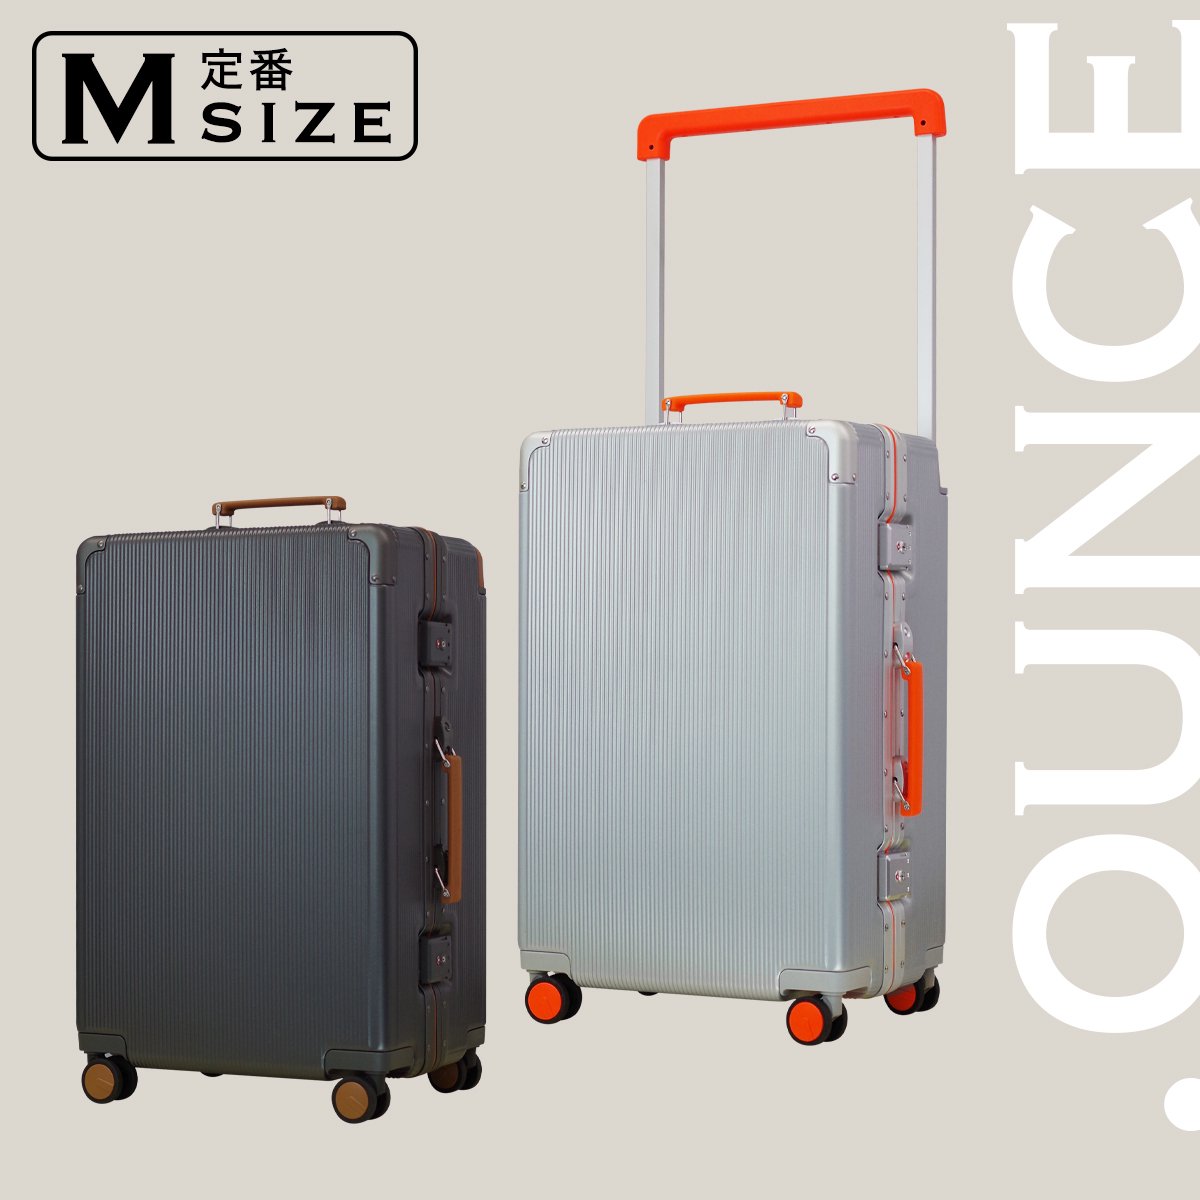 .OUNCE スーツケース アルミフレーム Mサイズ STYLISH JAPAN 